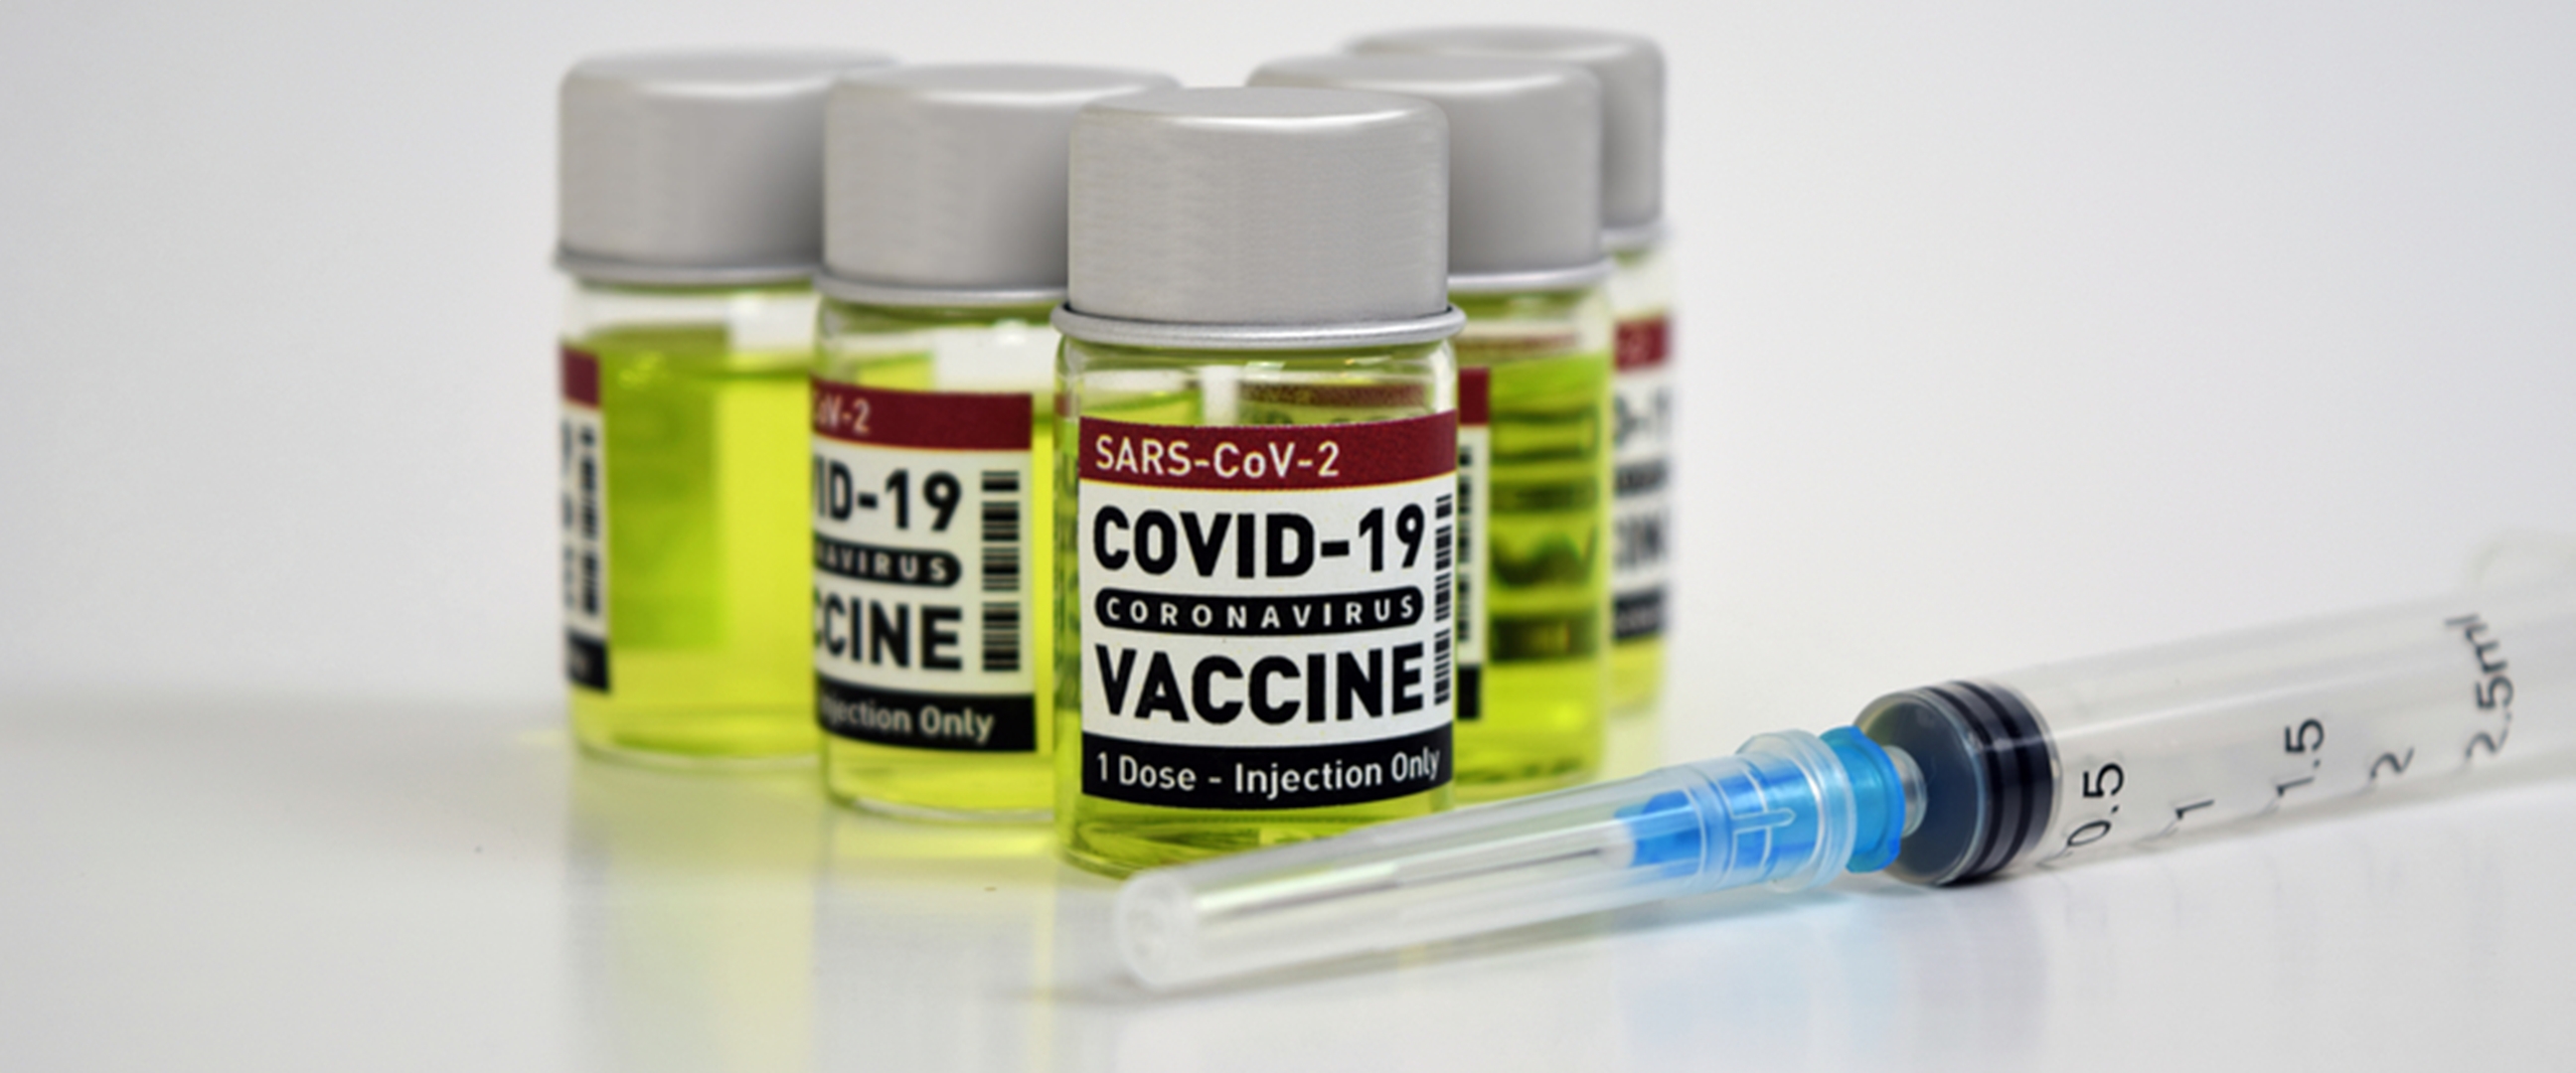 Uji klinis vaksin Covid-19 di Indonesia masuk tahap tiga, ini faktanya